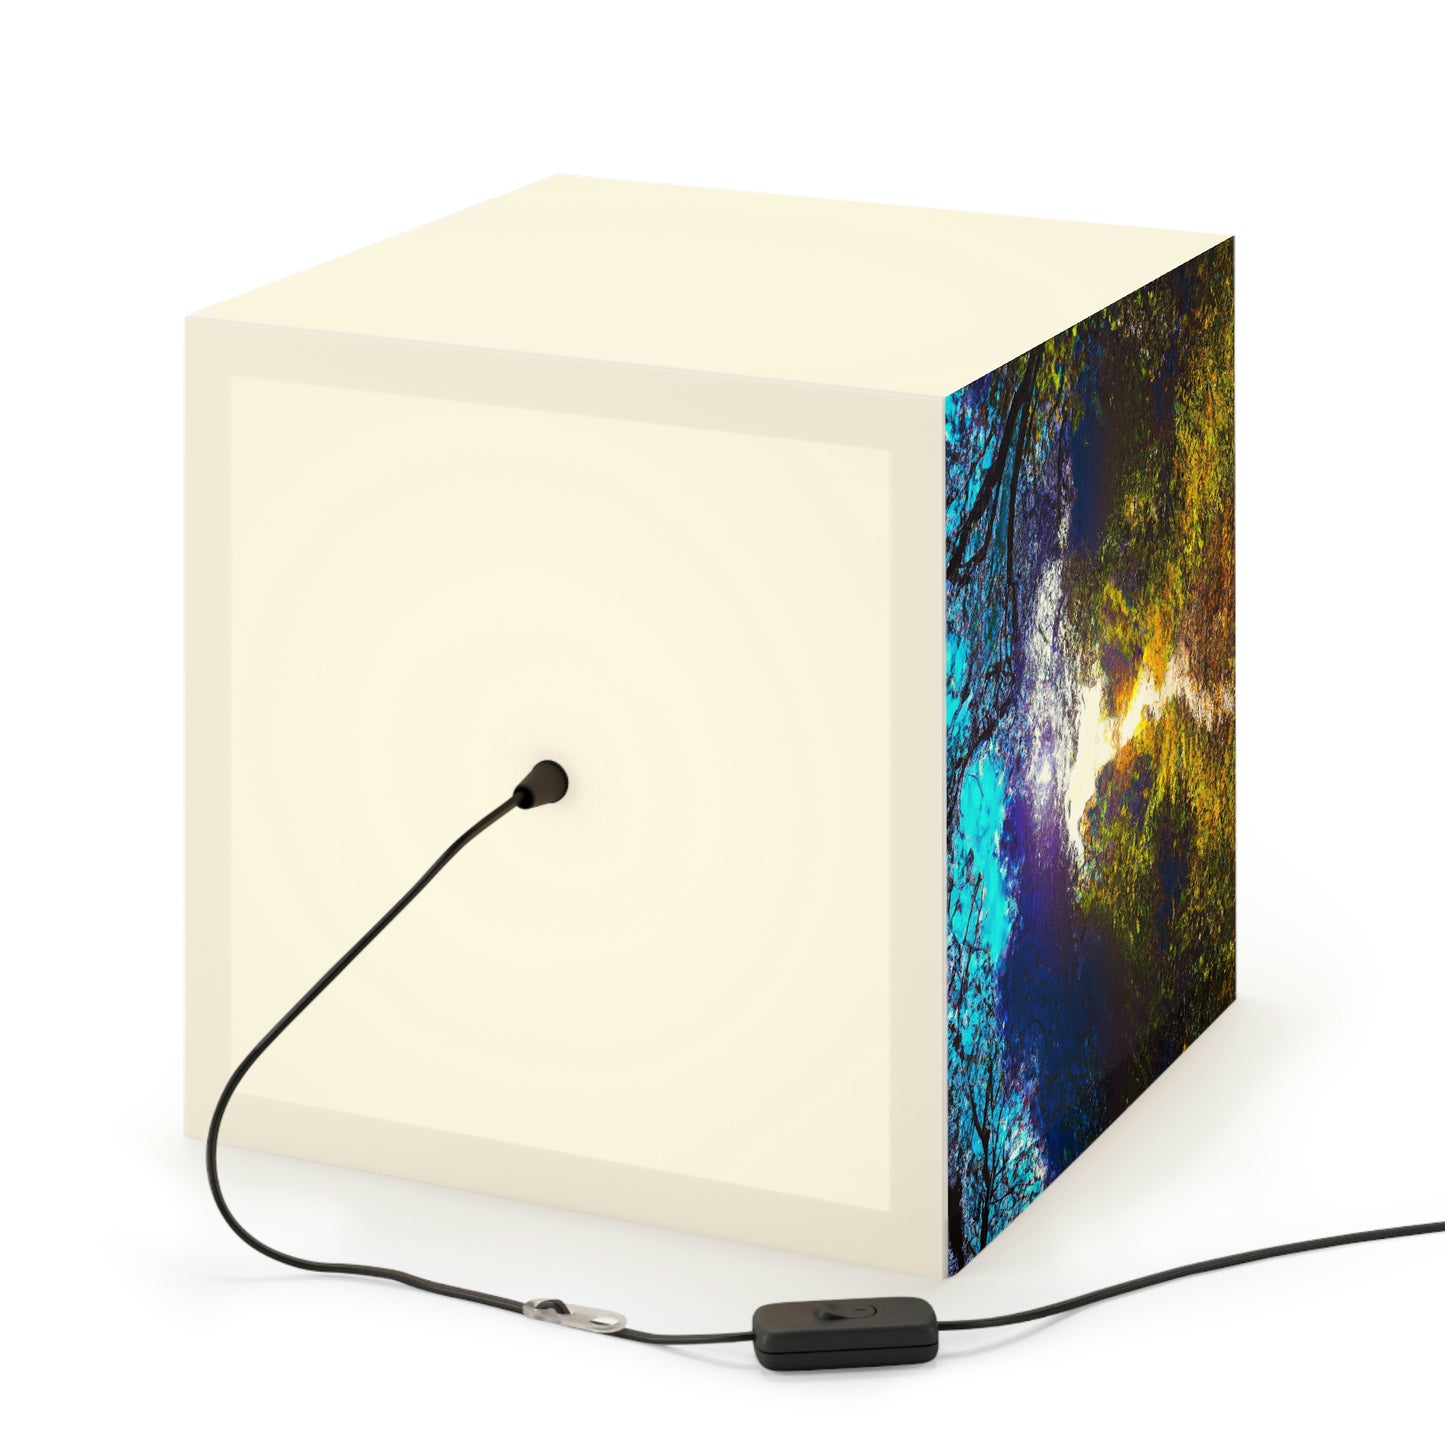 "Ein Lichtstrahl auf einem vergessenen Pfad" - Die Alien Light Cube Lampe